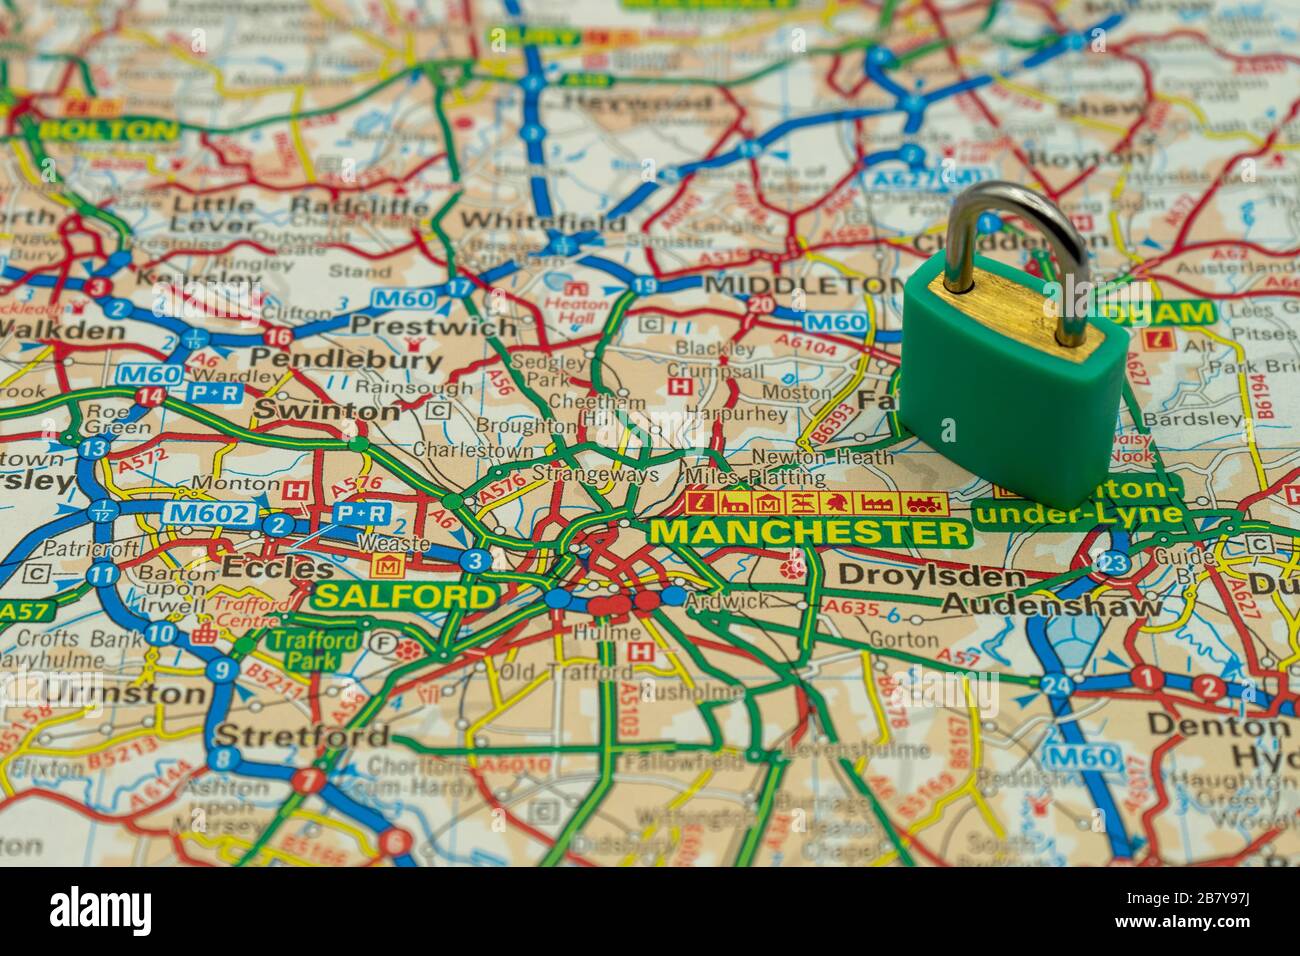 Manchester UK affiché sur une carte routière ou géographique avec un cadenas en haut pour représenter une ville en lock-down Banque D'Images